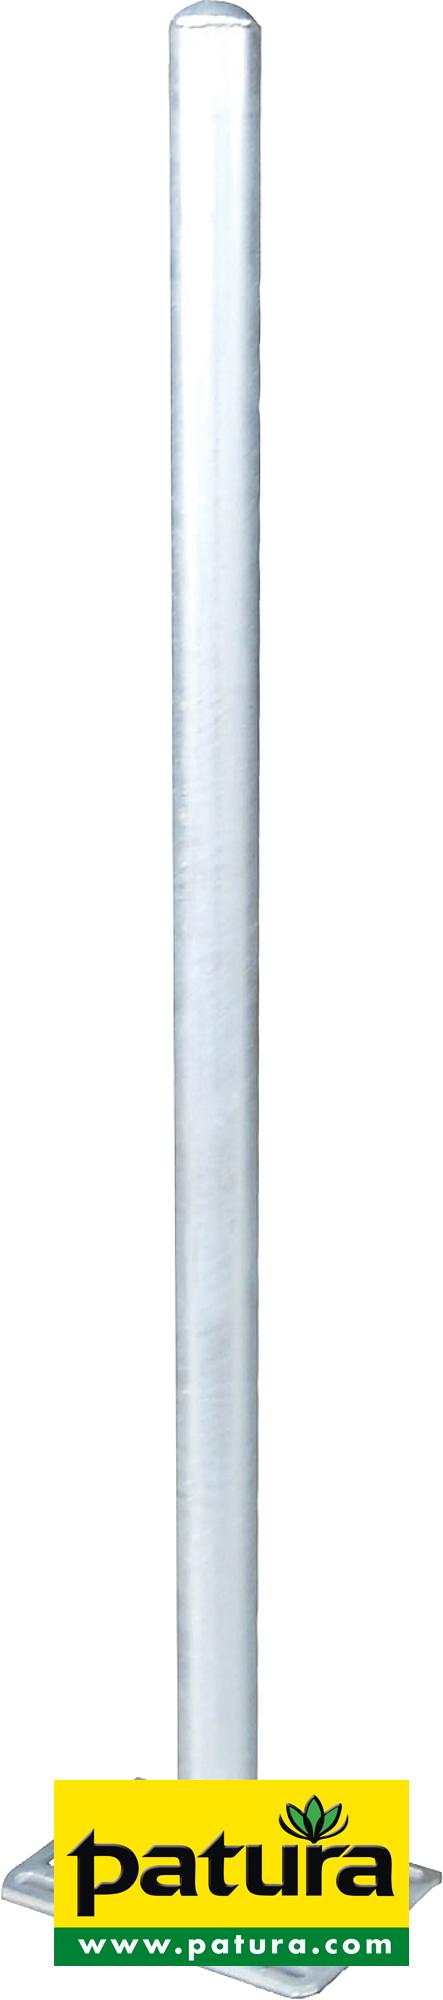 Photo de Poteau d=76 mm, L=1,65 m avec platine pour caillebotis